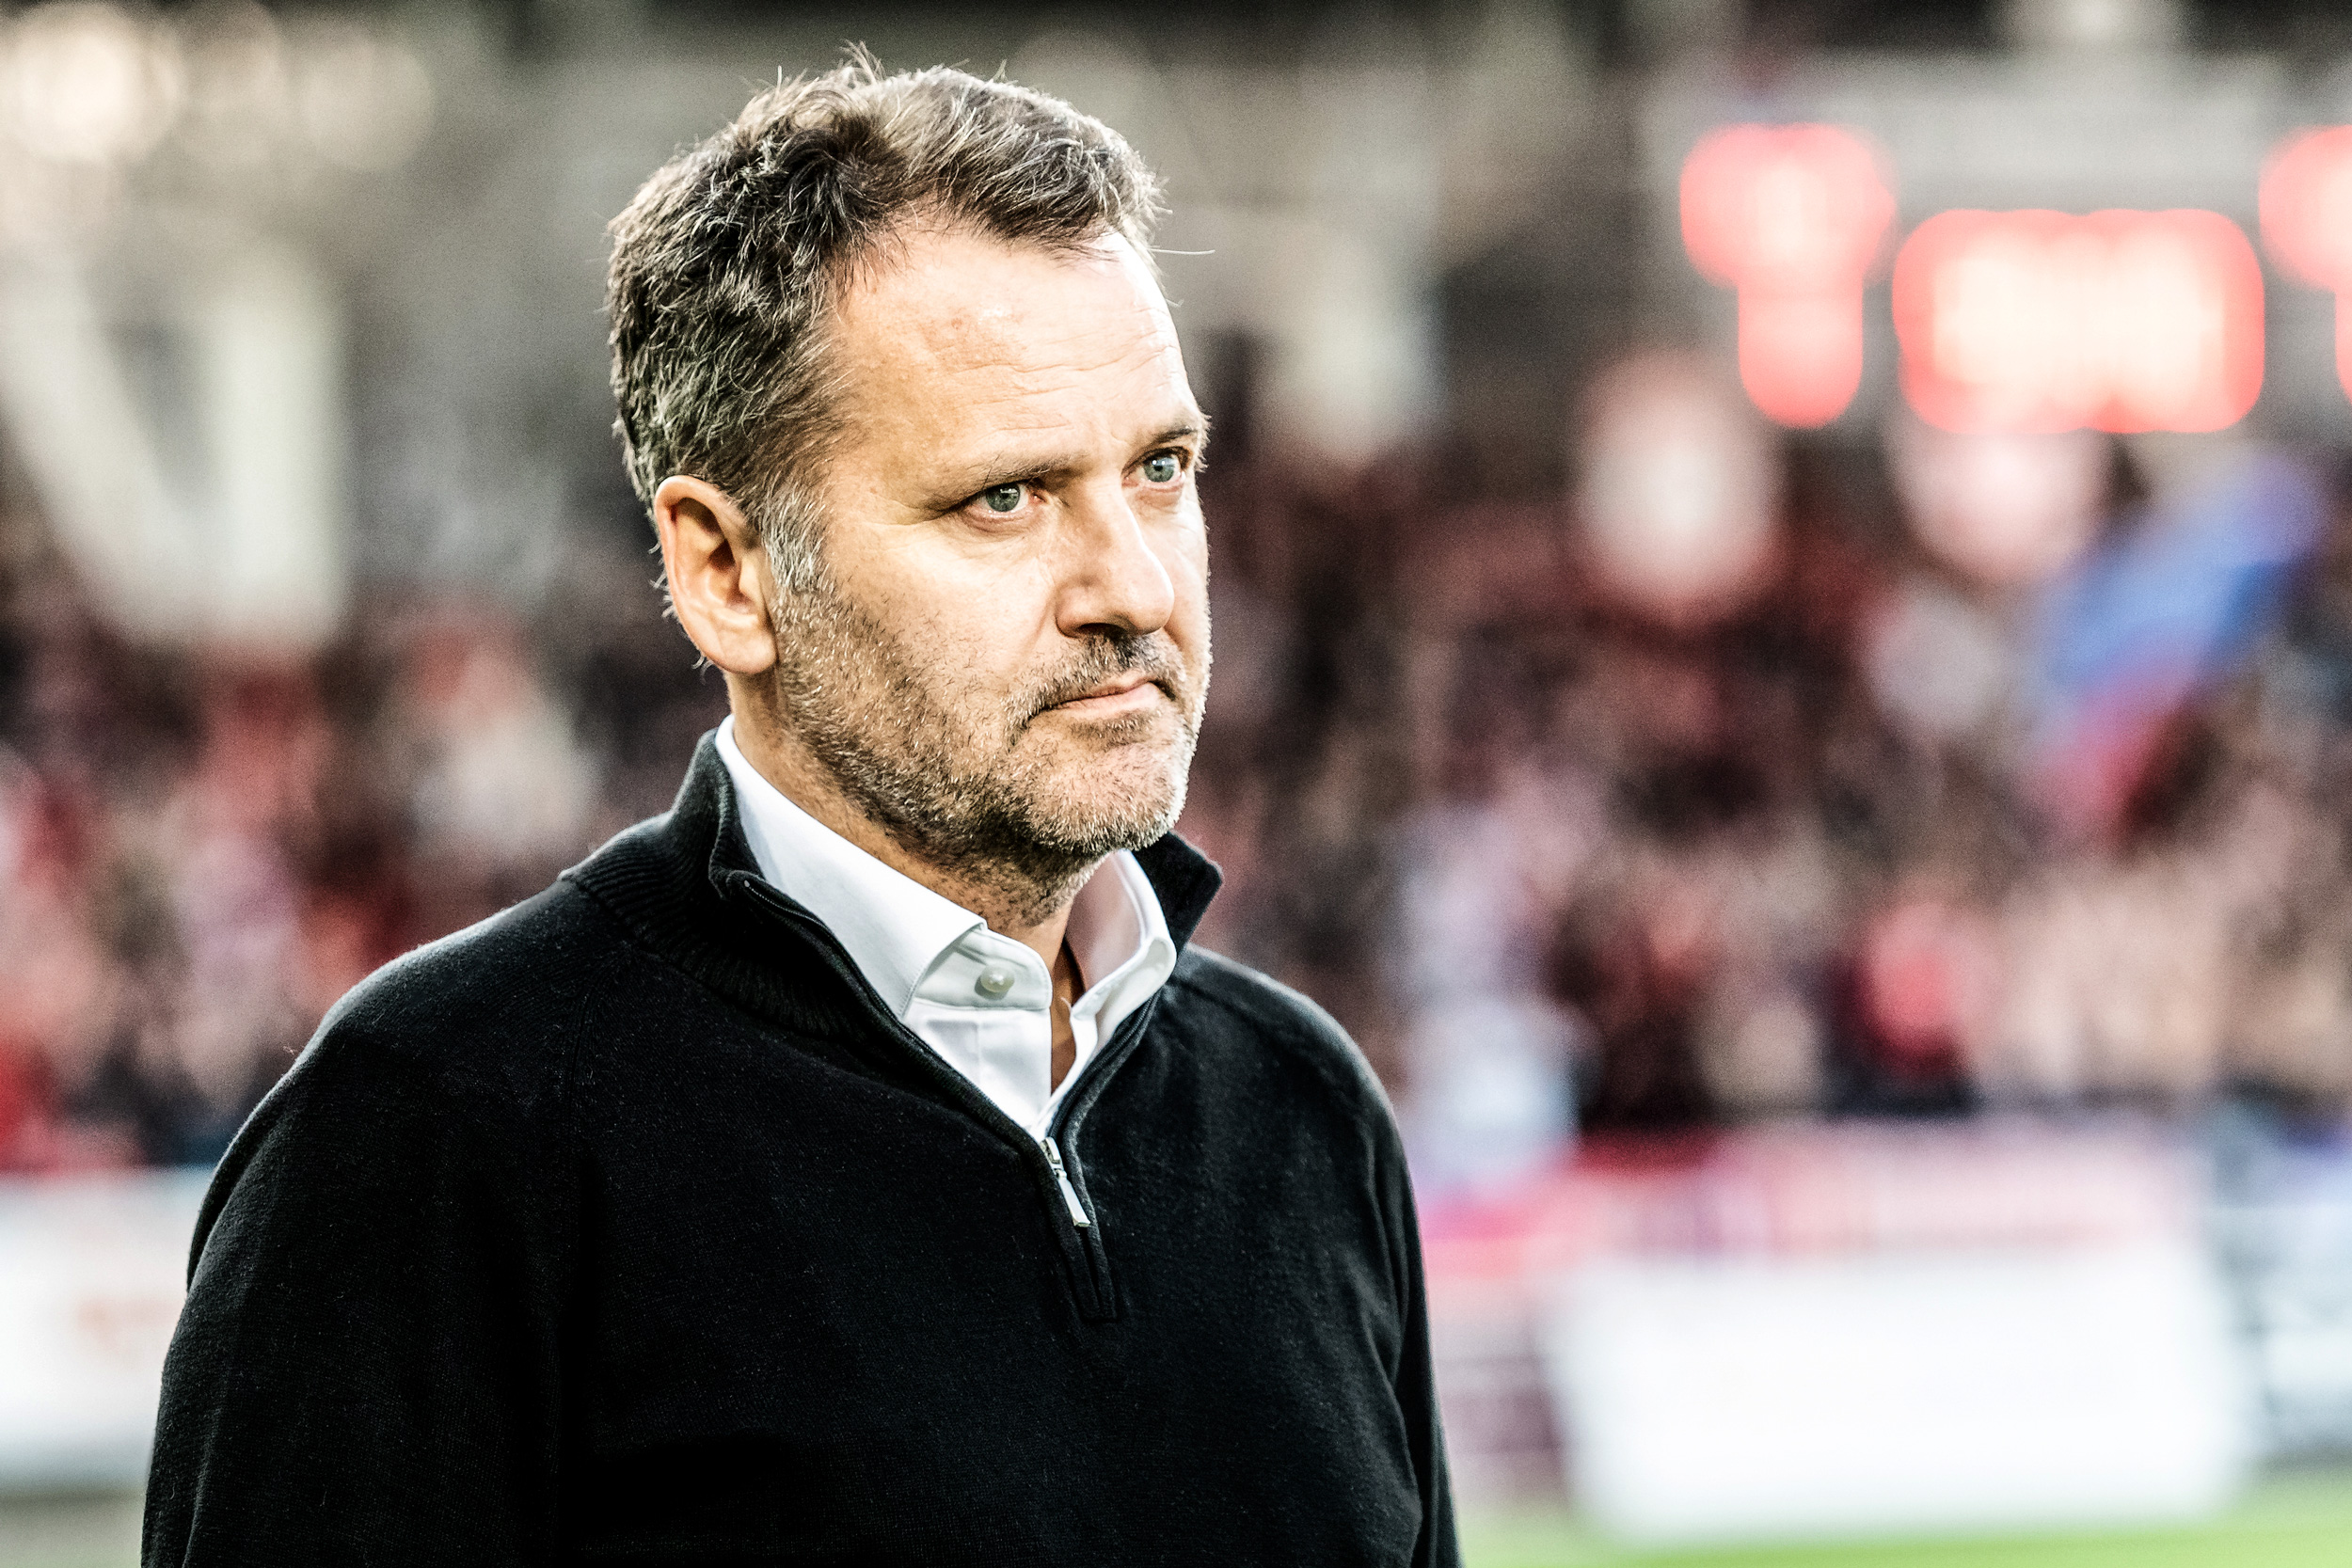 Tor Thodesen to continue as head coach